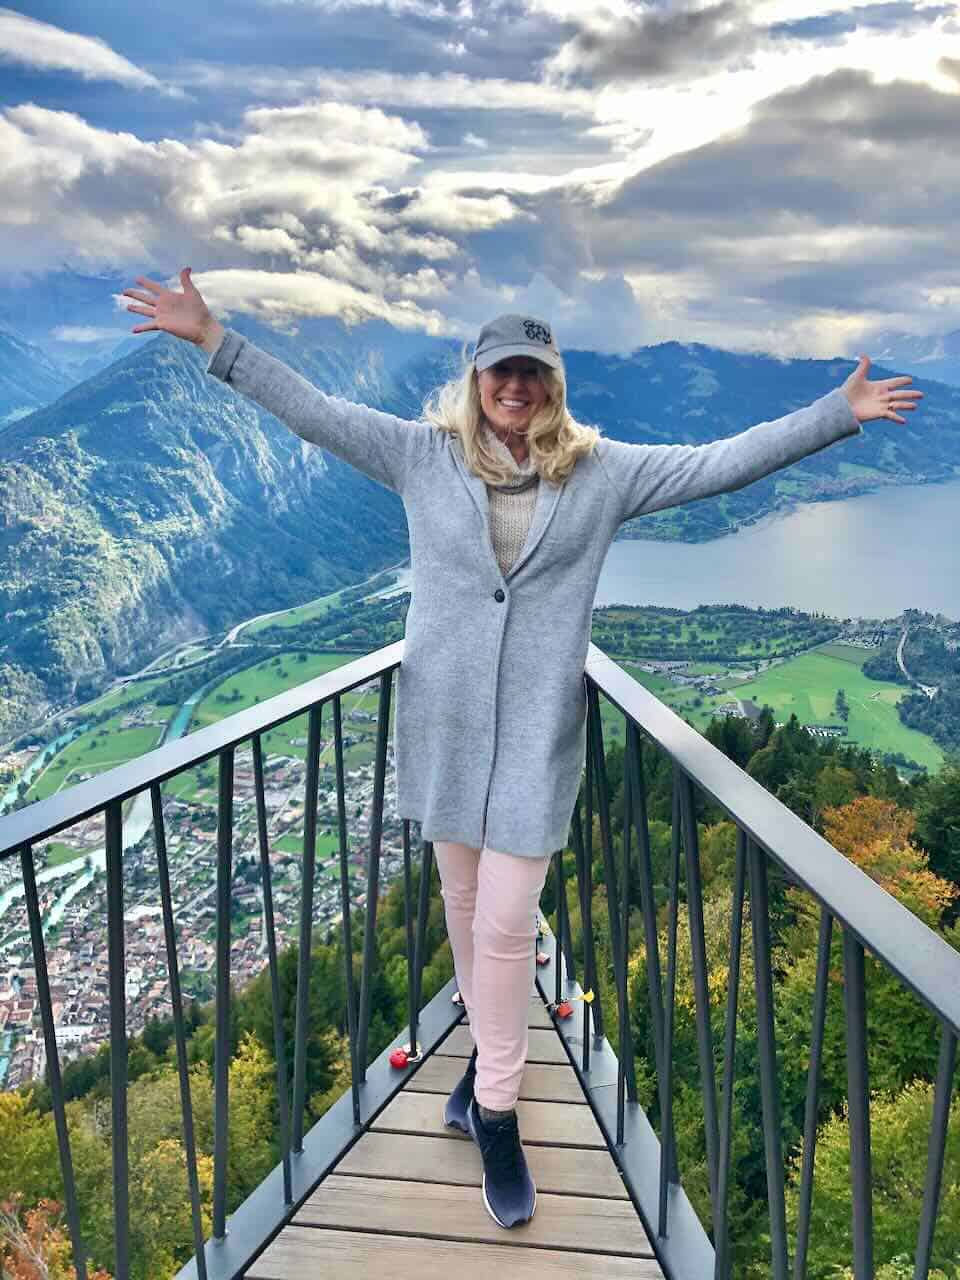 Harder Kulm Interlaken - Day trip from Lucerne Switzerland